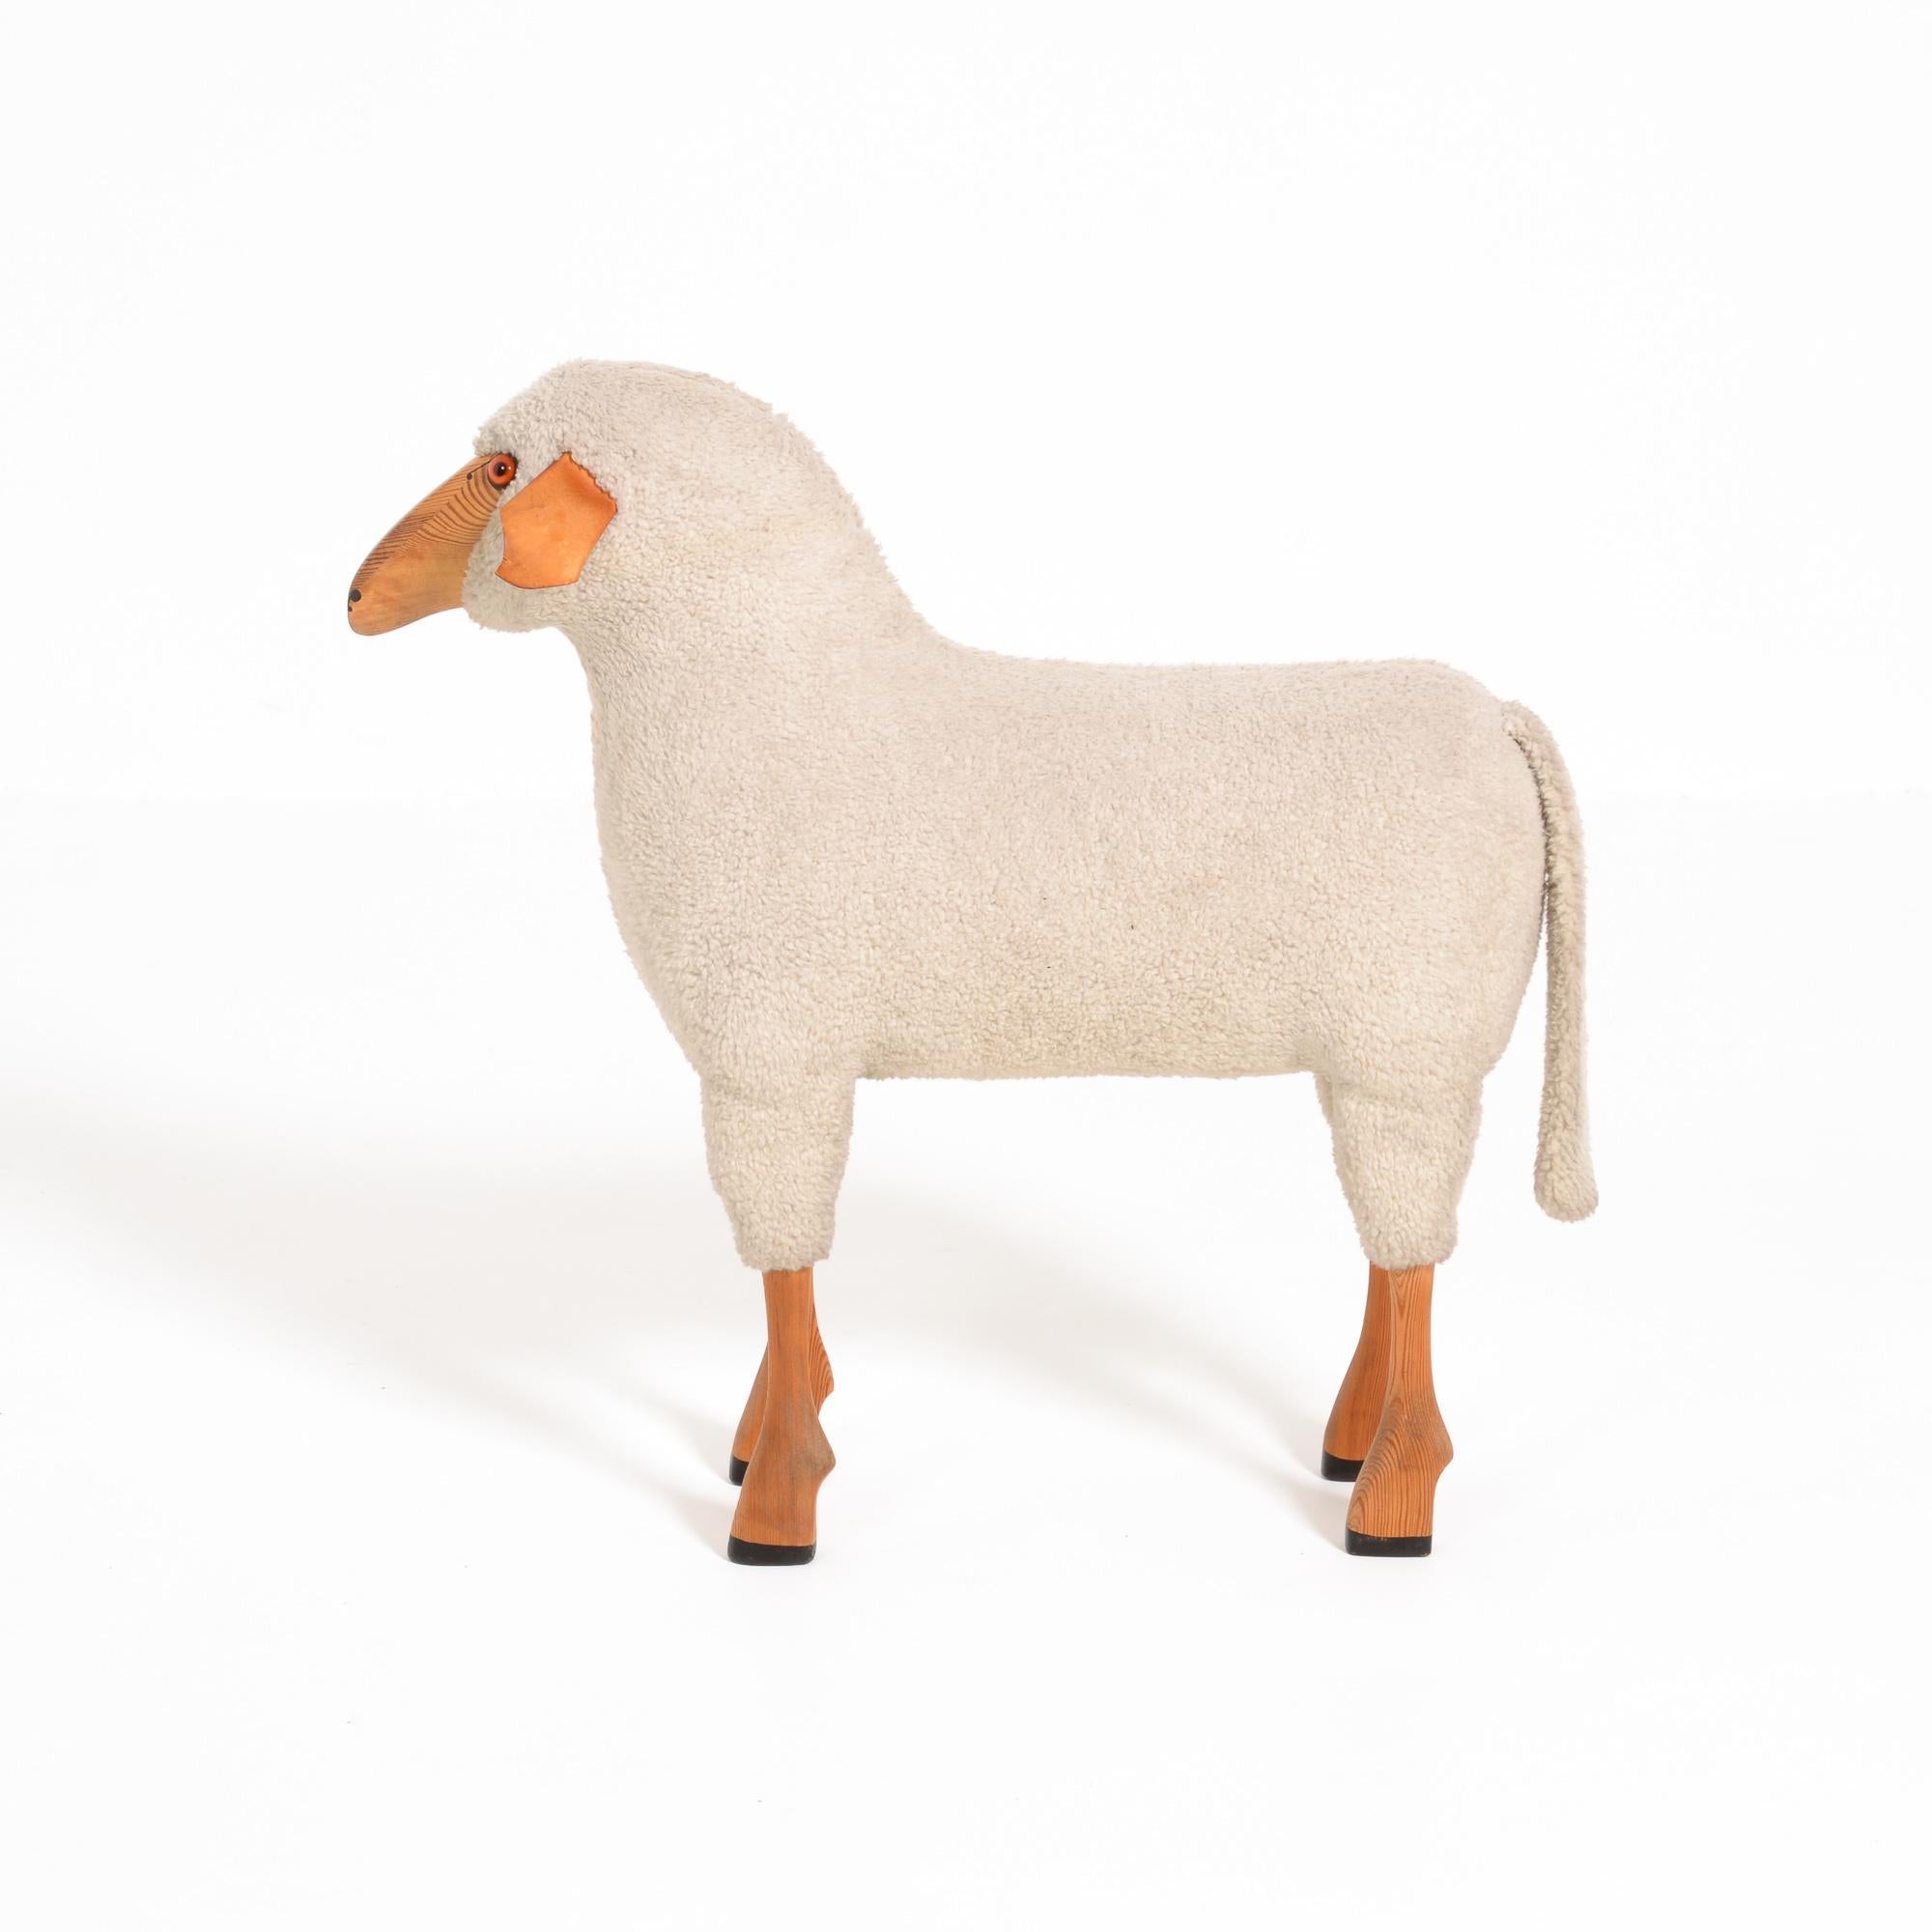 Modern Wool Sheep Sculpture by Hans-Peter Krafft for Meier